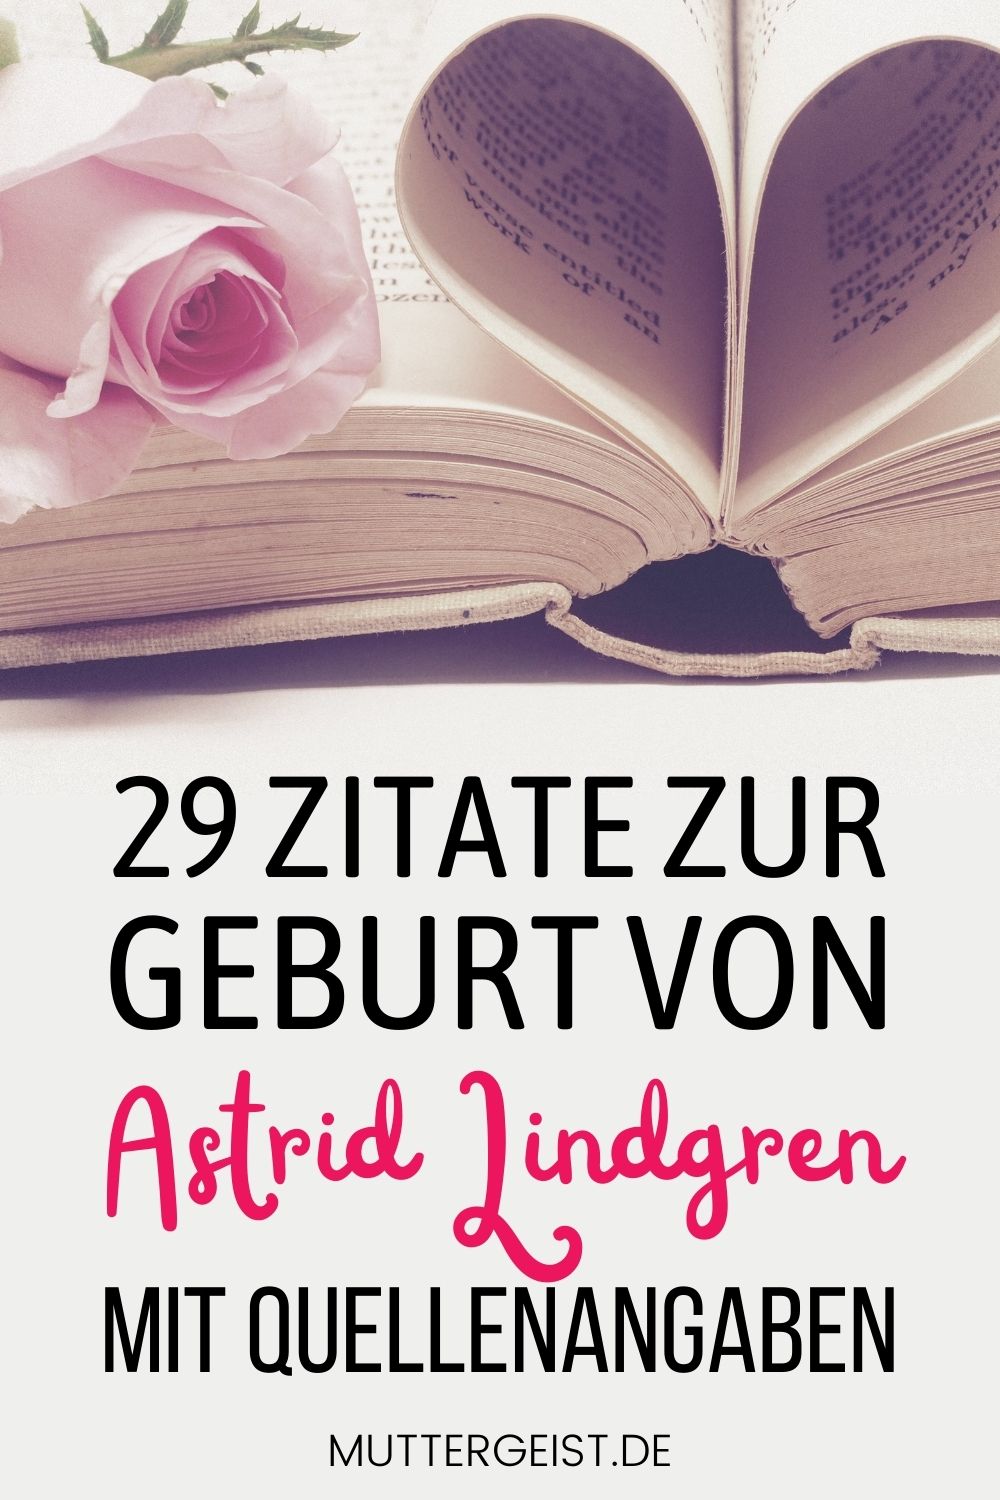 29 Zitate zur Geburt von Astrid Lindgren mit Quellenangaben Pinterest